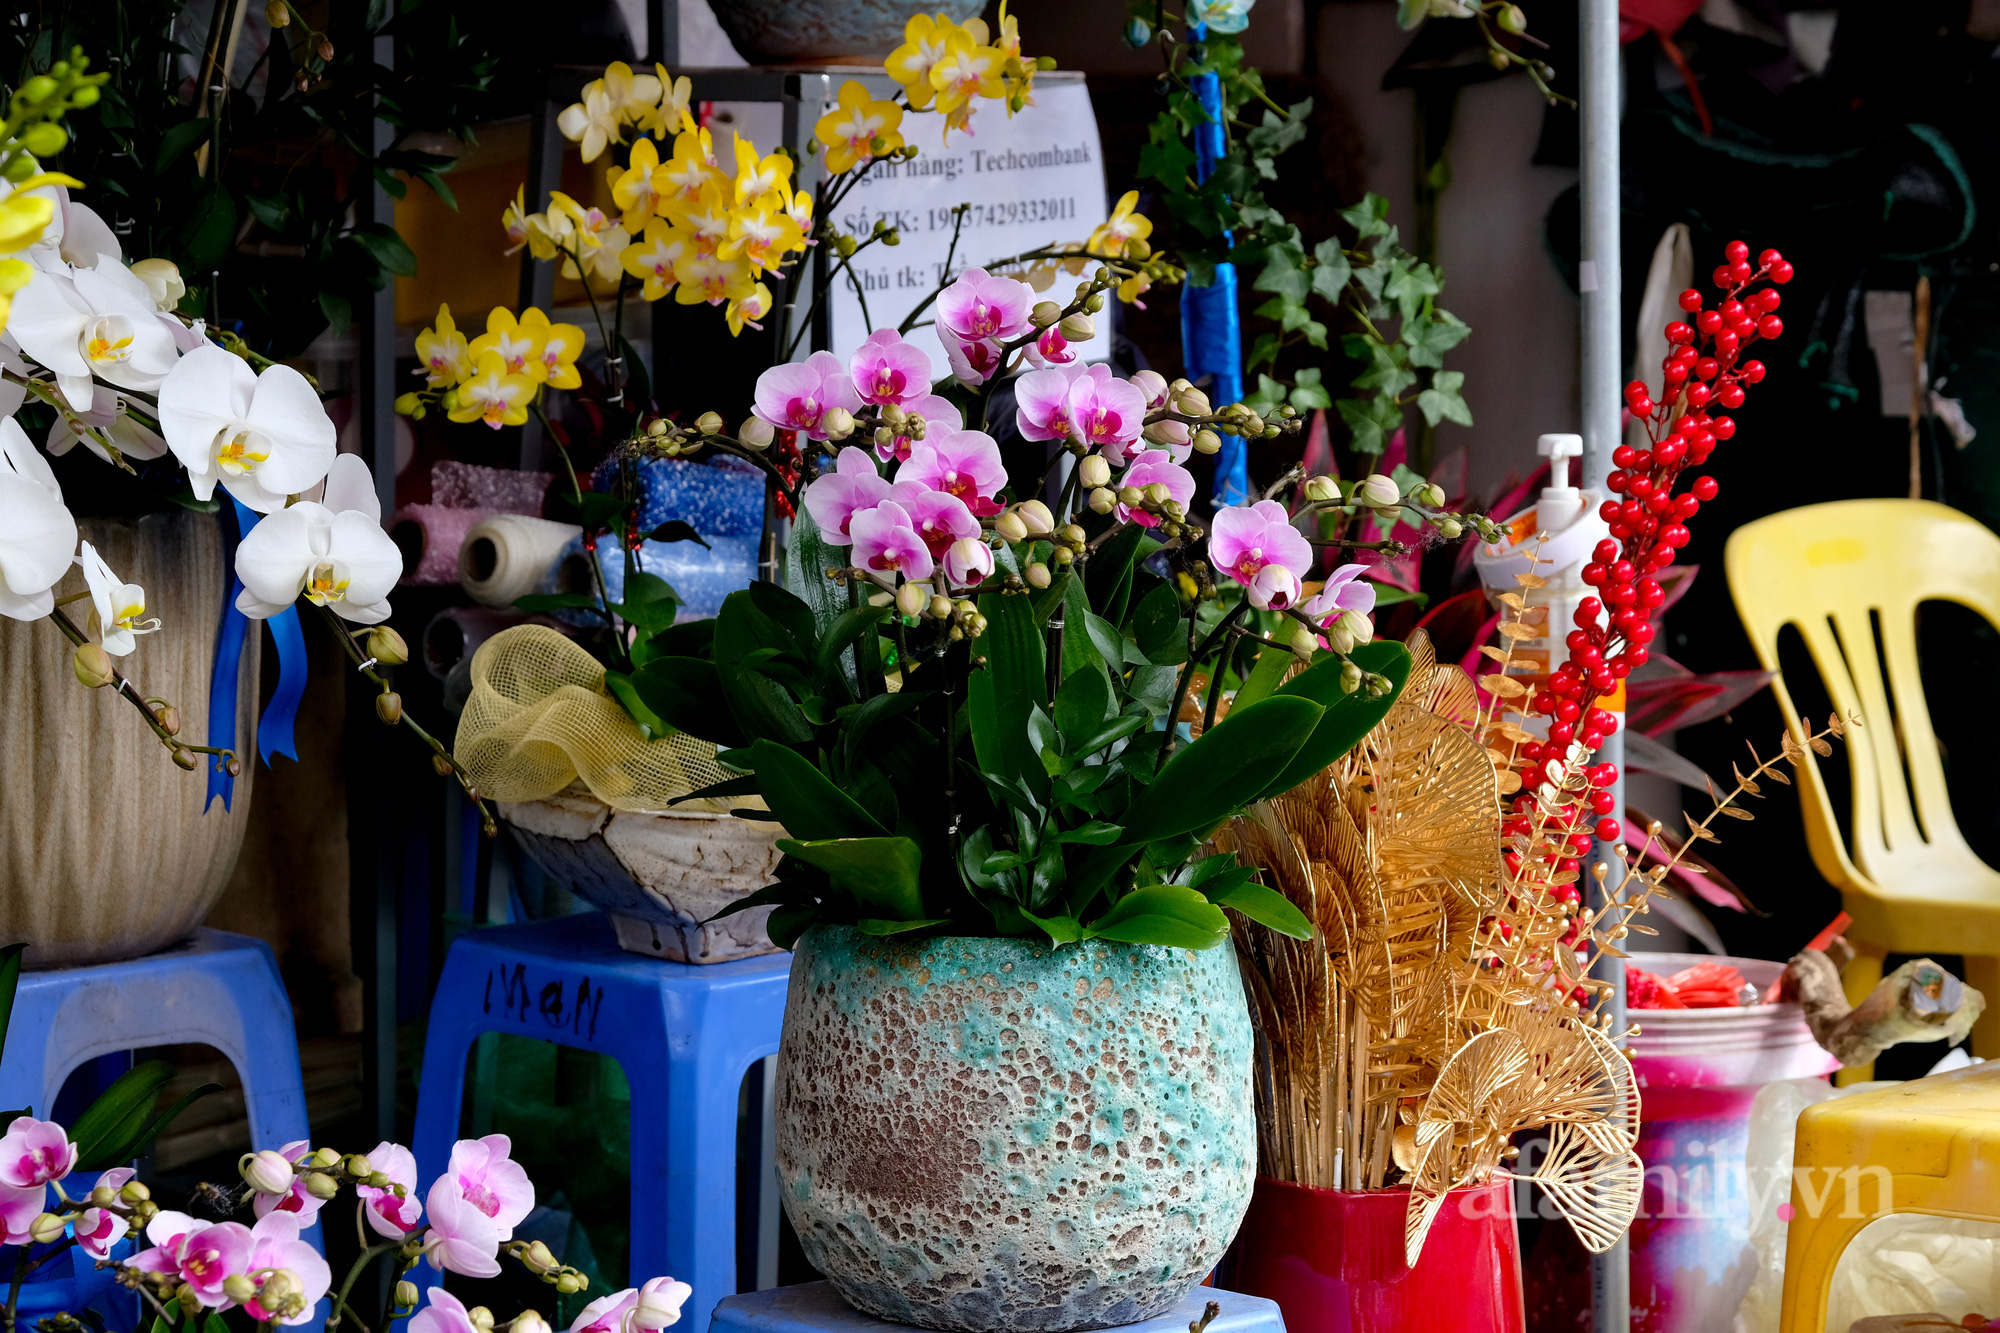 29 Tết đi chợ hoa Quảng Bá: Giá hoa tăng 20% so với ngày thường, mua nhanh 5 cành đào đông cắm đẹp nhà mà hết 2,2 triệu - Ảnh 22.